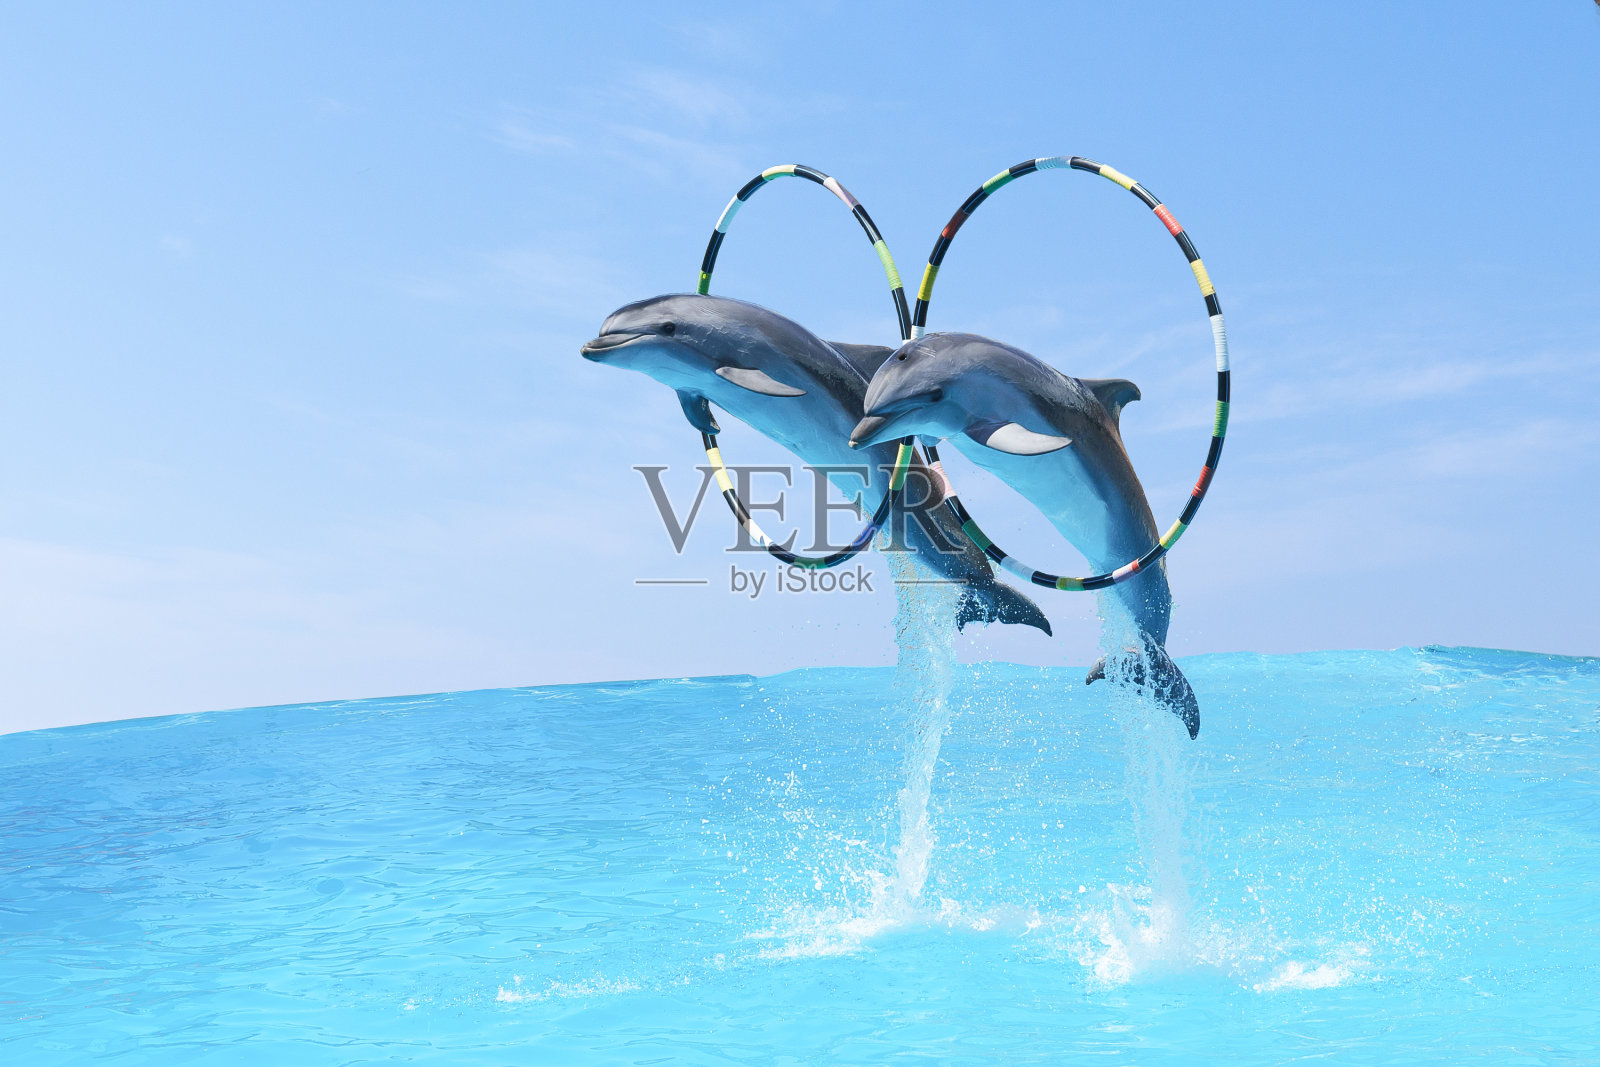 跳起来的是两只宽吻海豚。Tursiops truncatus)穿过环照片摄影图片